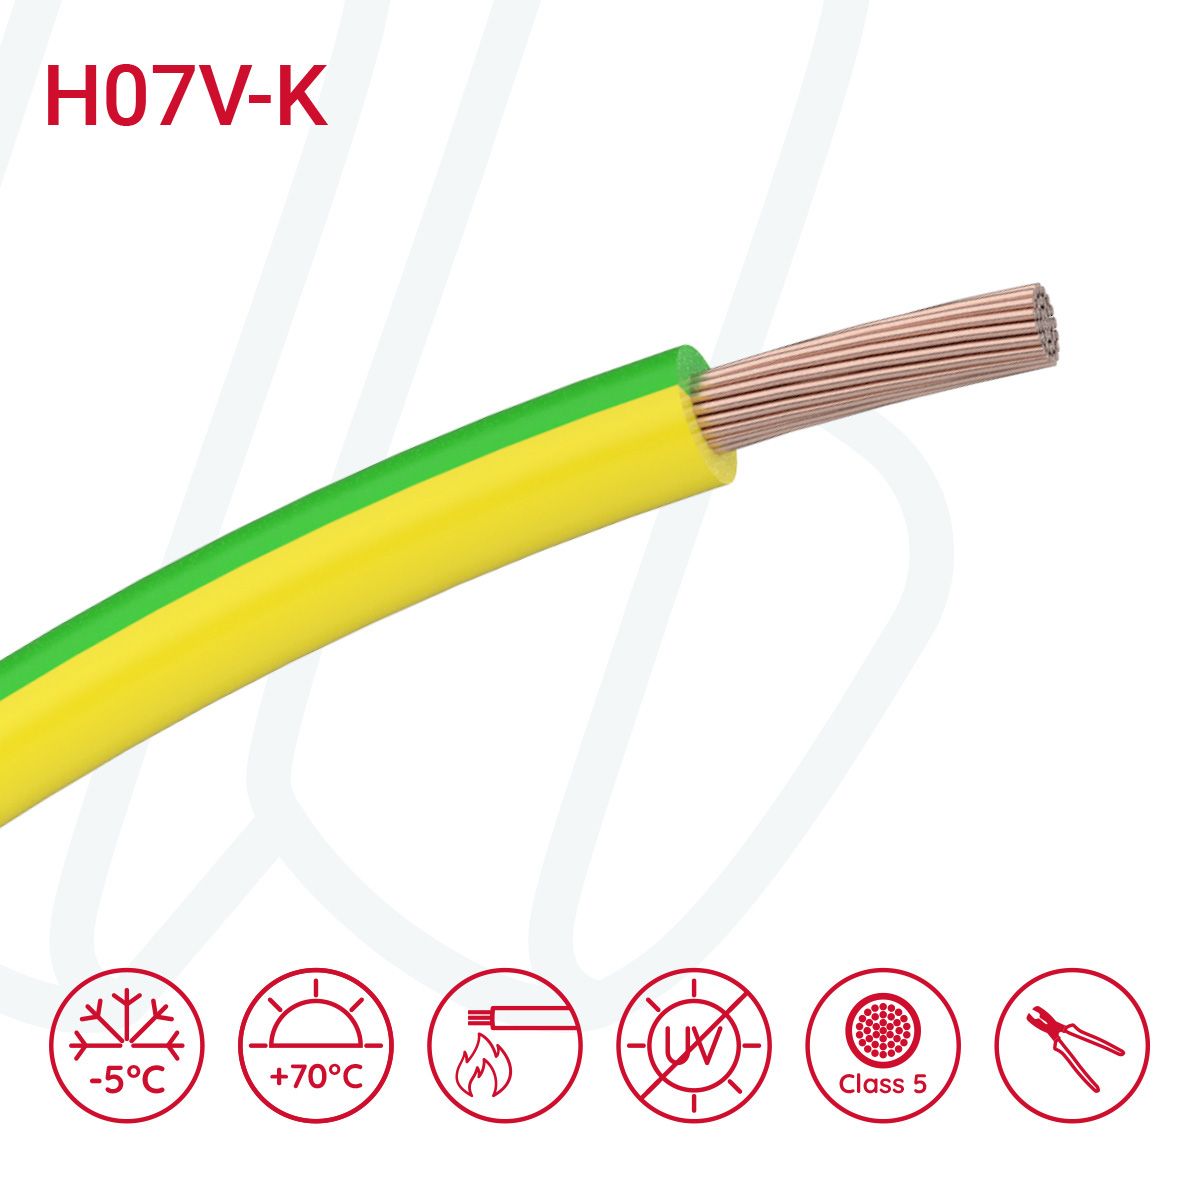 Провід монтажний гнучкий H07V-K 10 мм² жовто-зелений, 01, 10